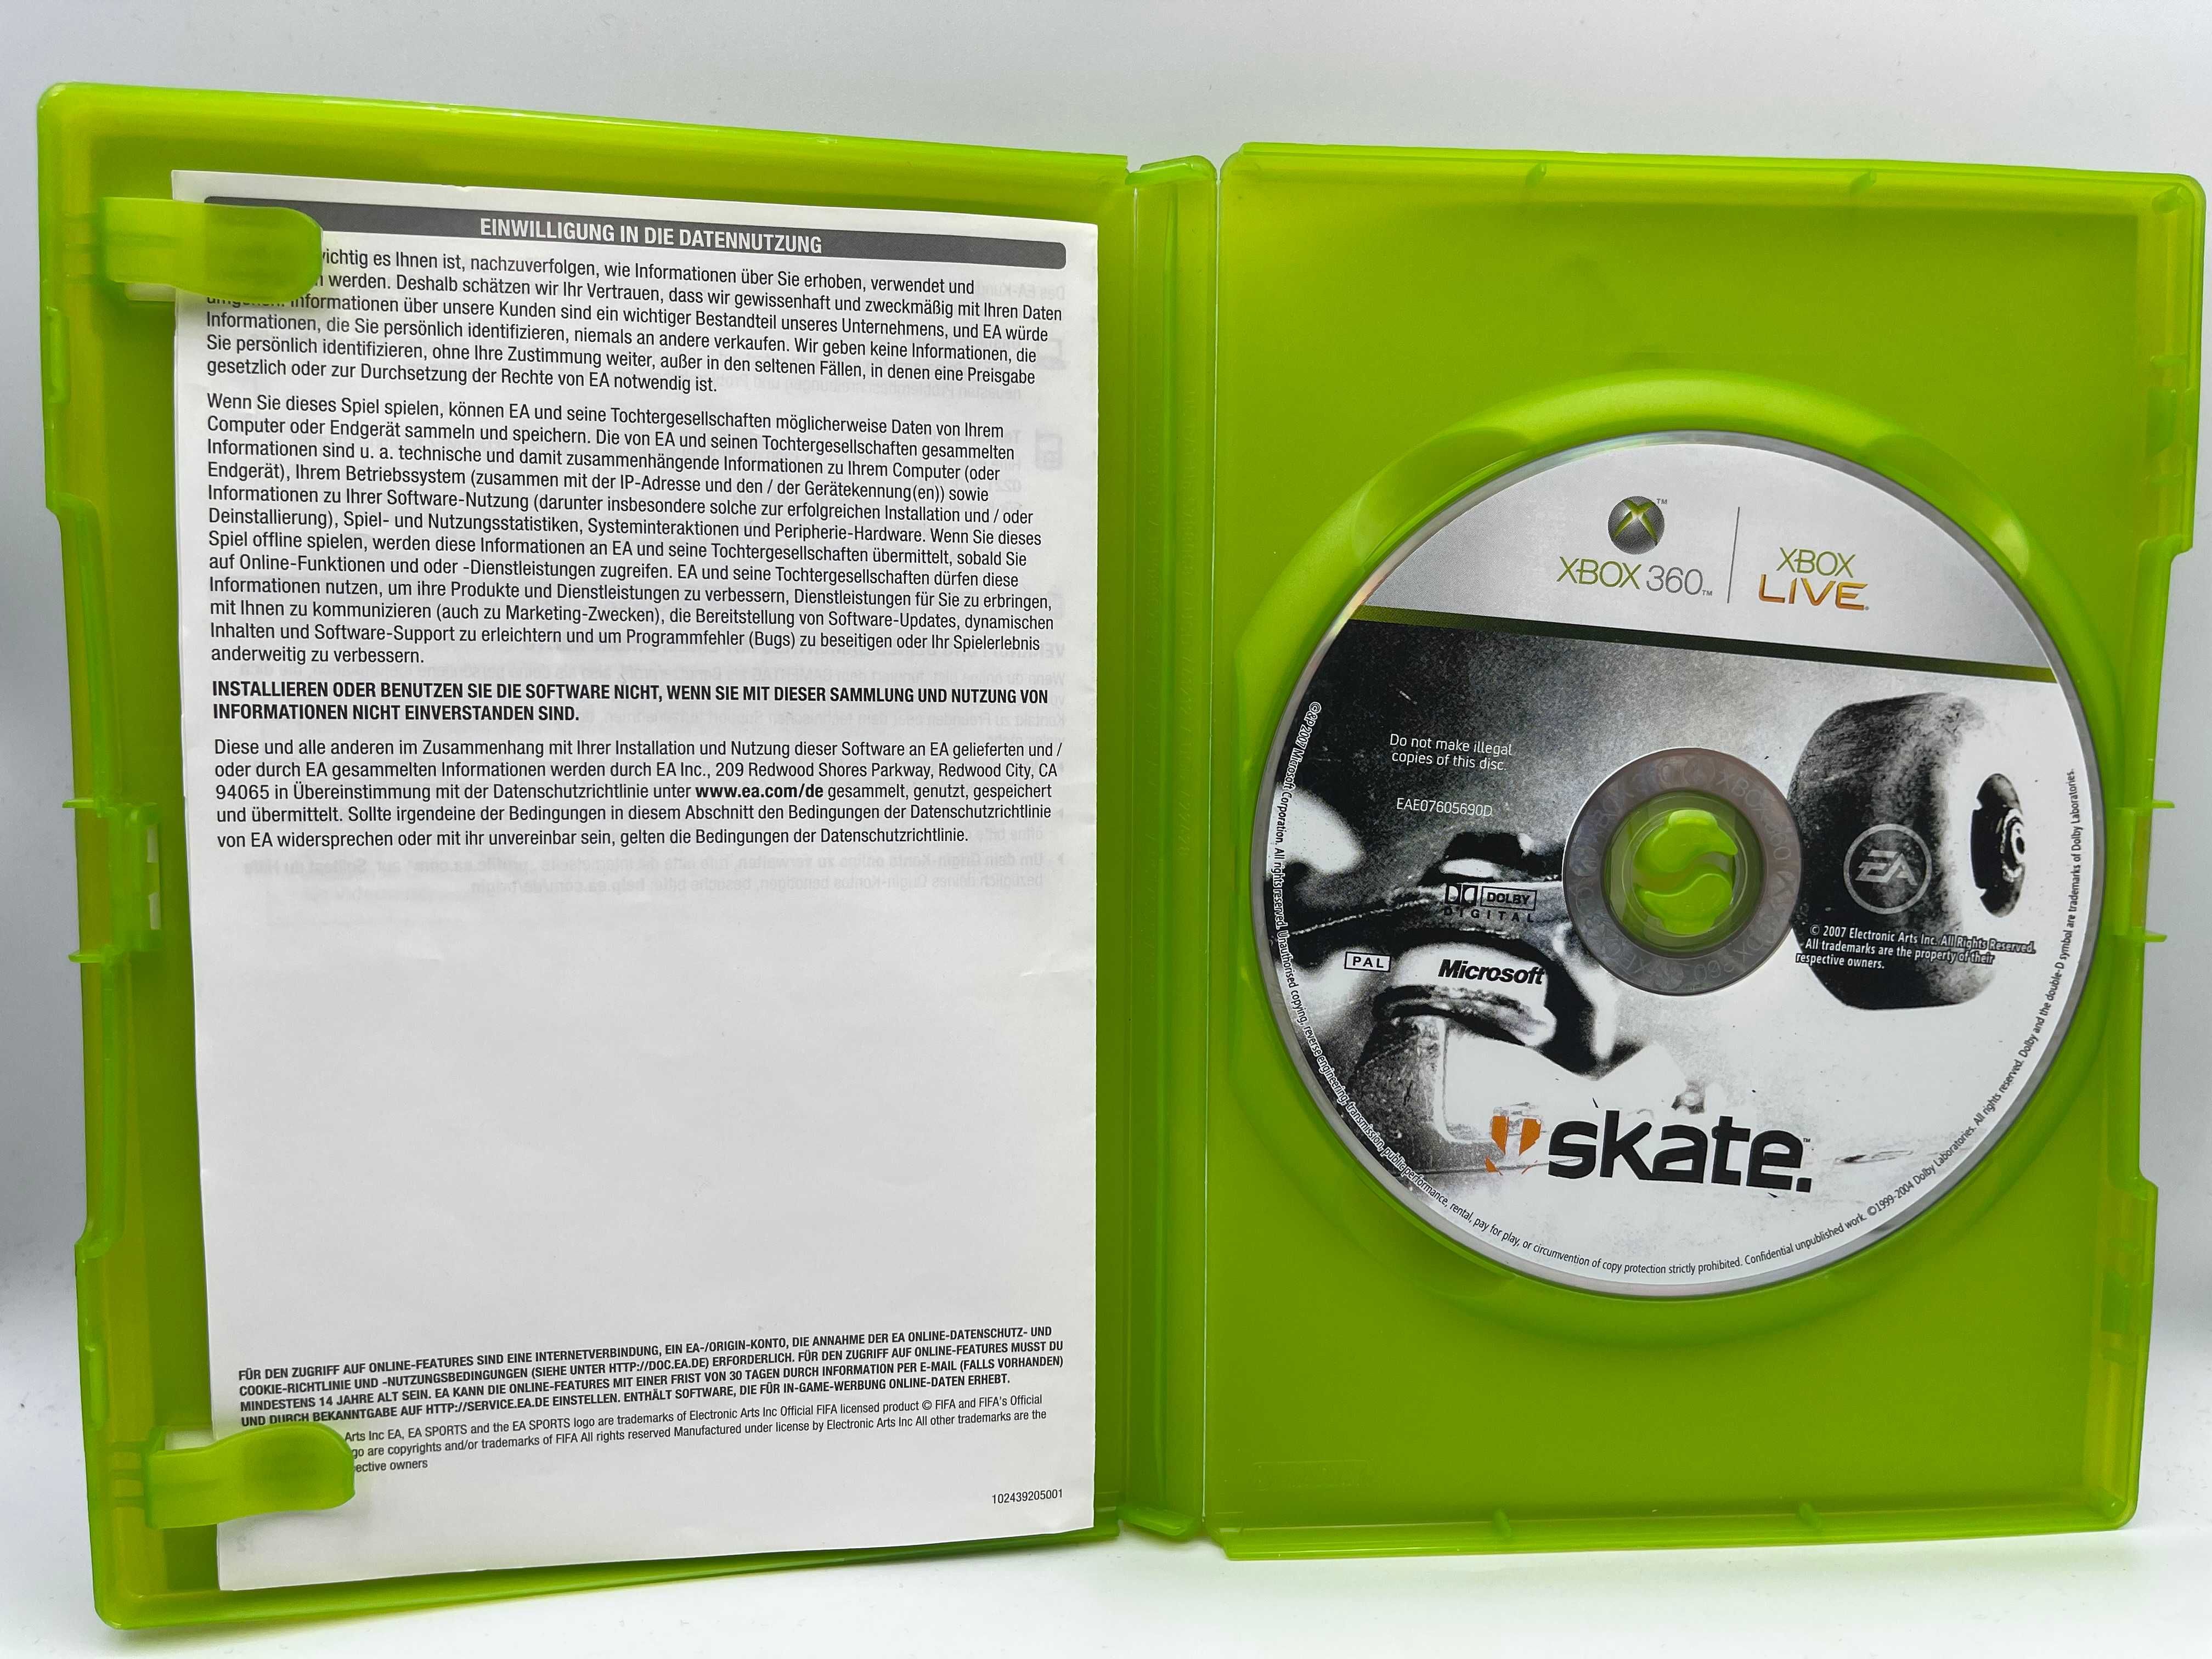 Gra Skate Xbox 360